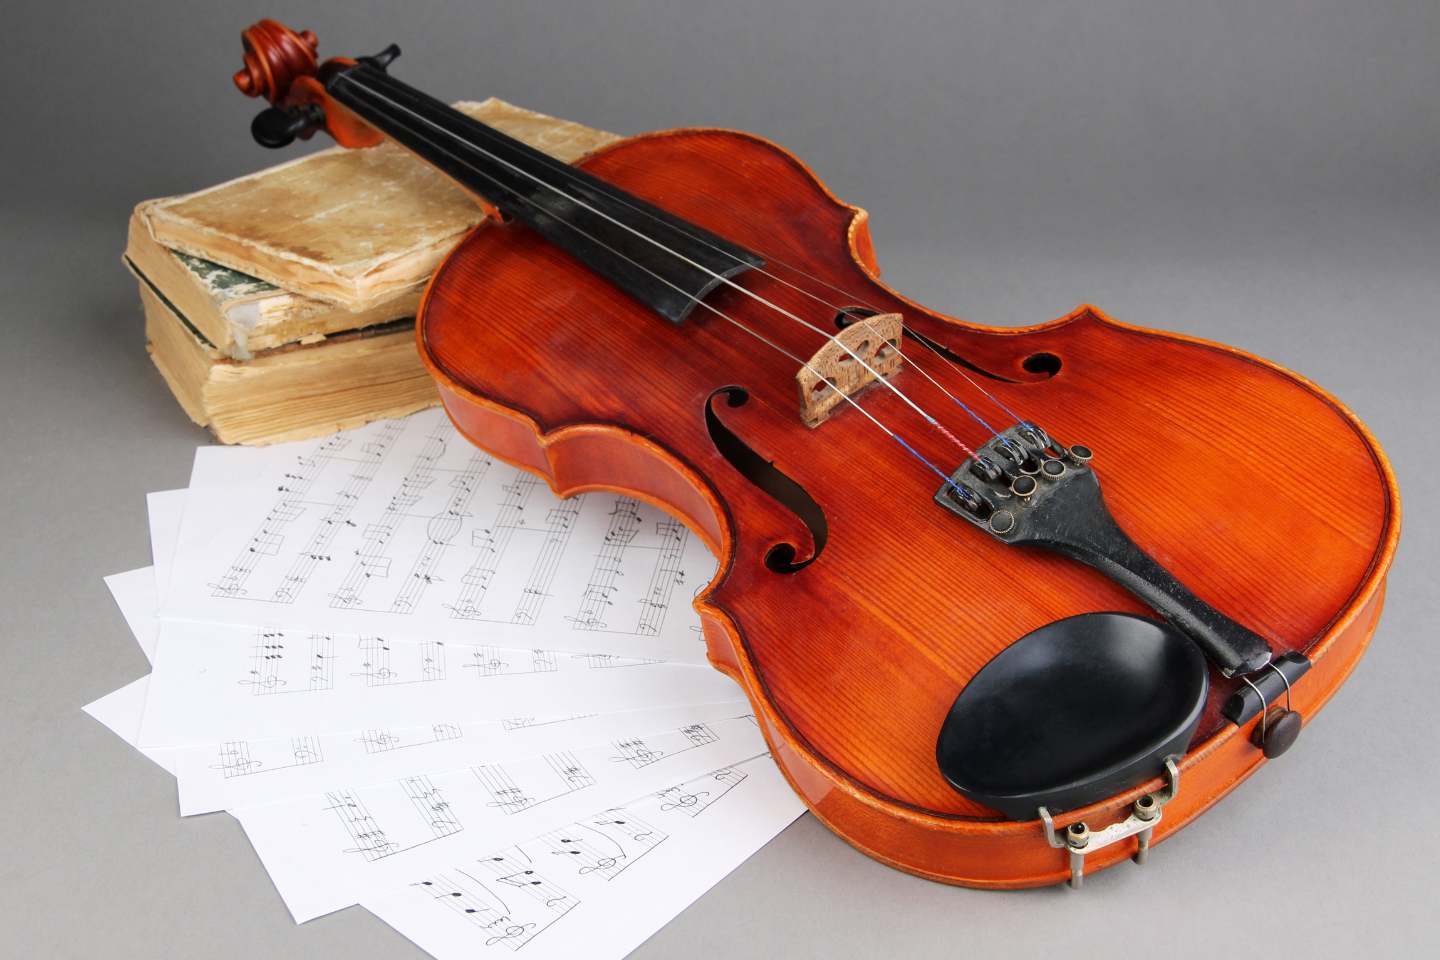 A Era Stradivarius